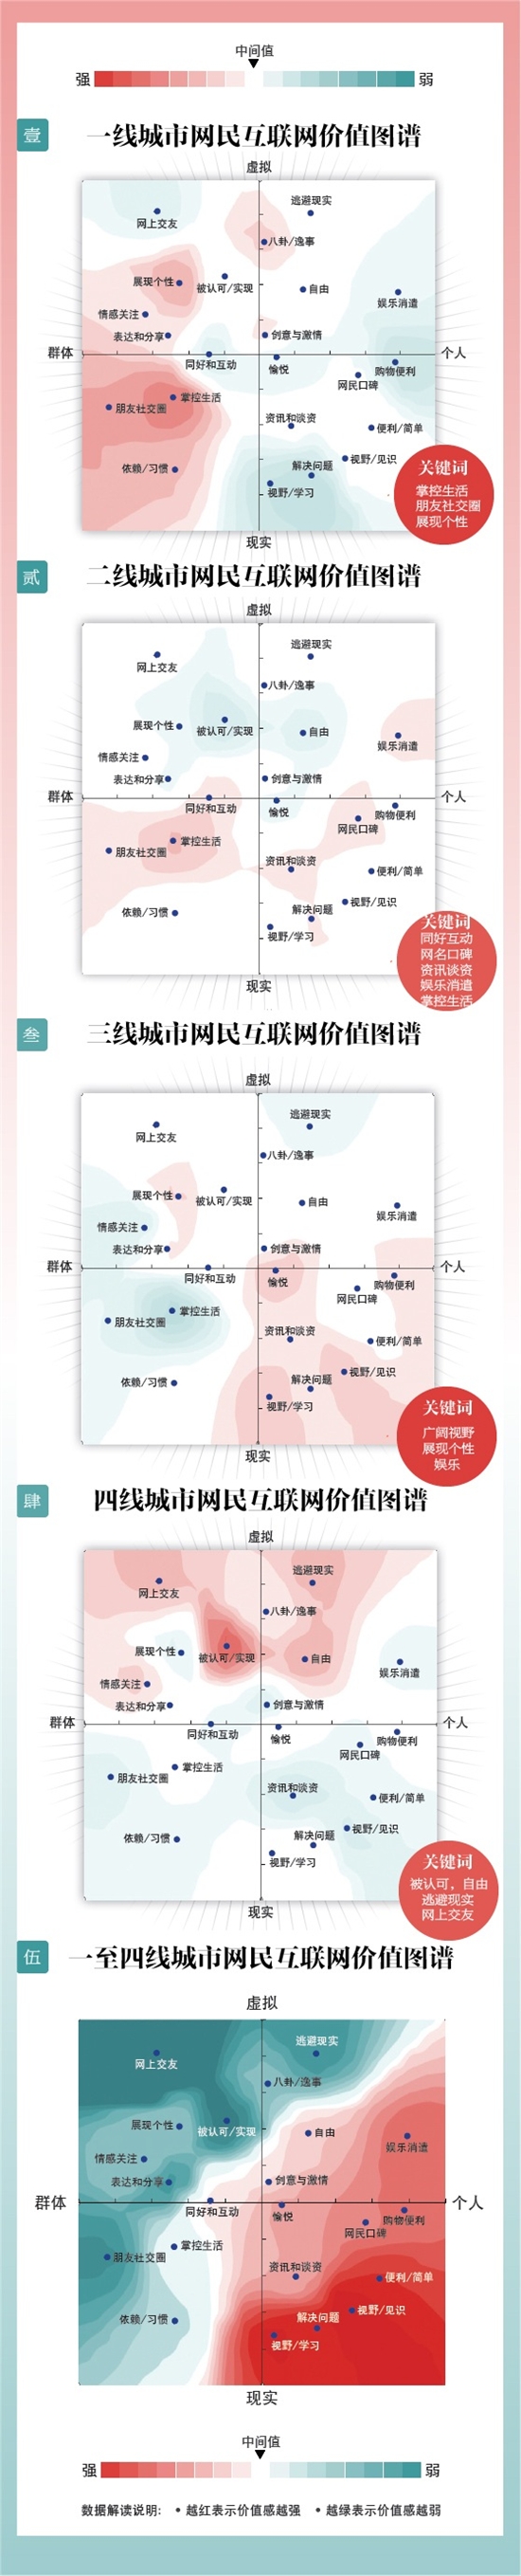 中国1-4线城市互联网价值分布信息图